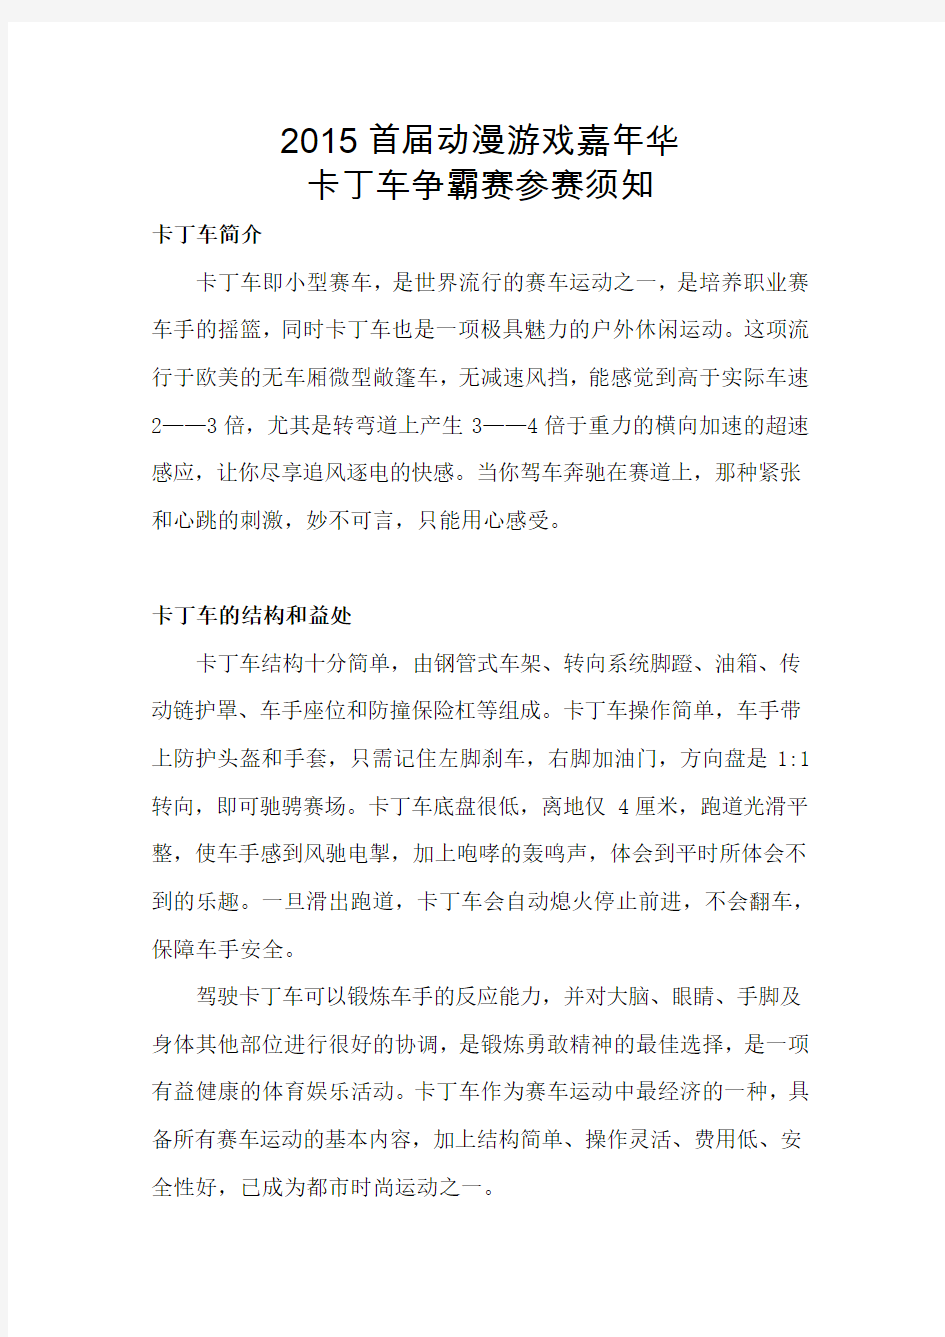 2015首届中国大同5.1动漫游戏嘉年华暨卡丁车争霸赛参赛须知